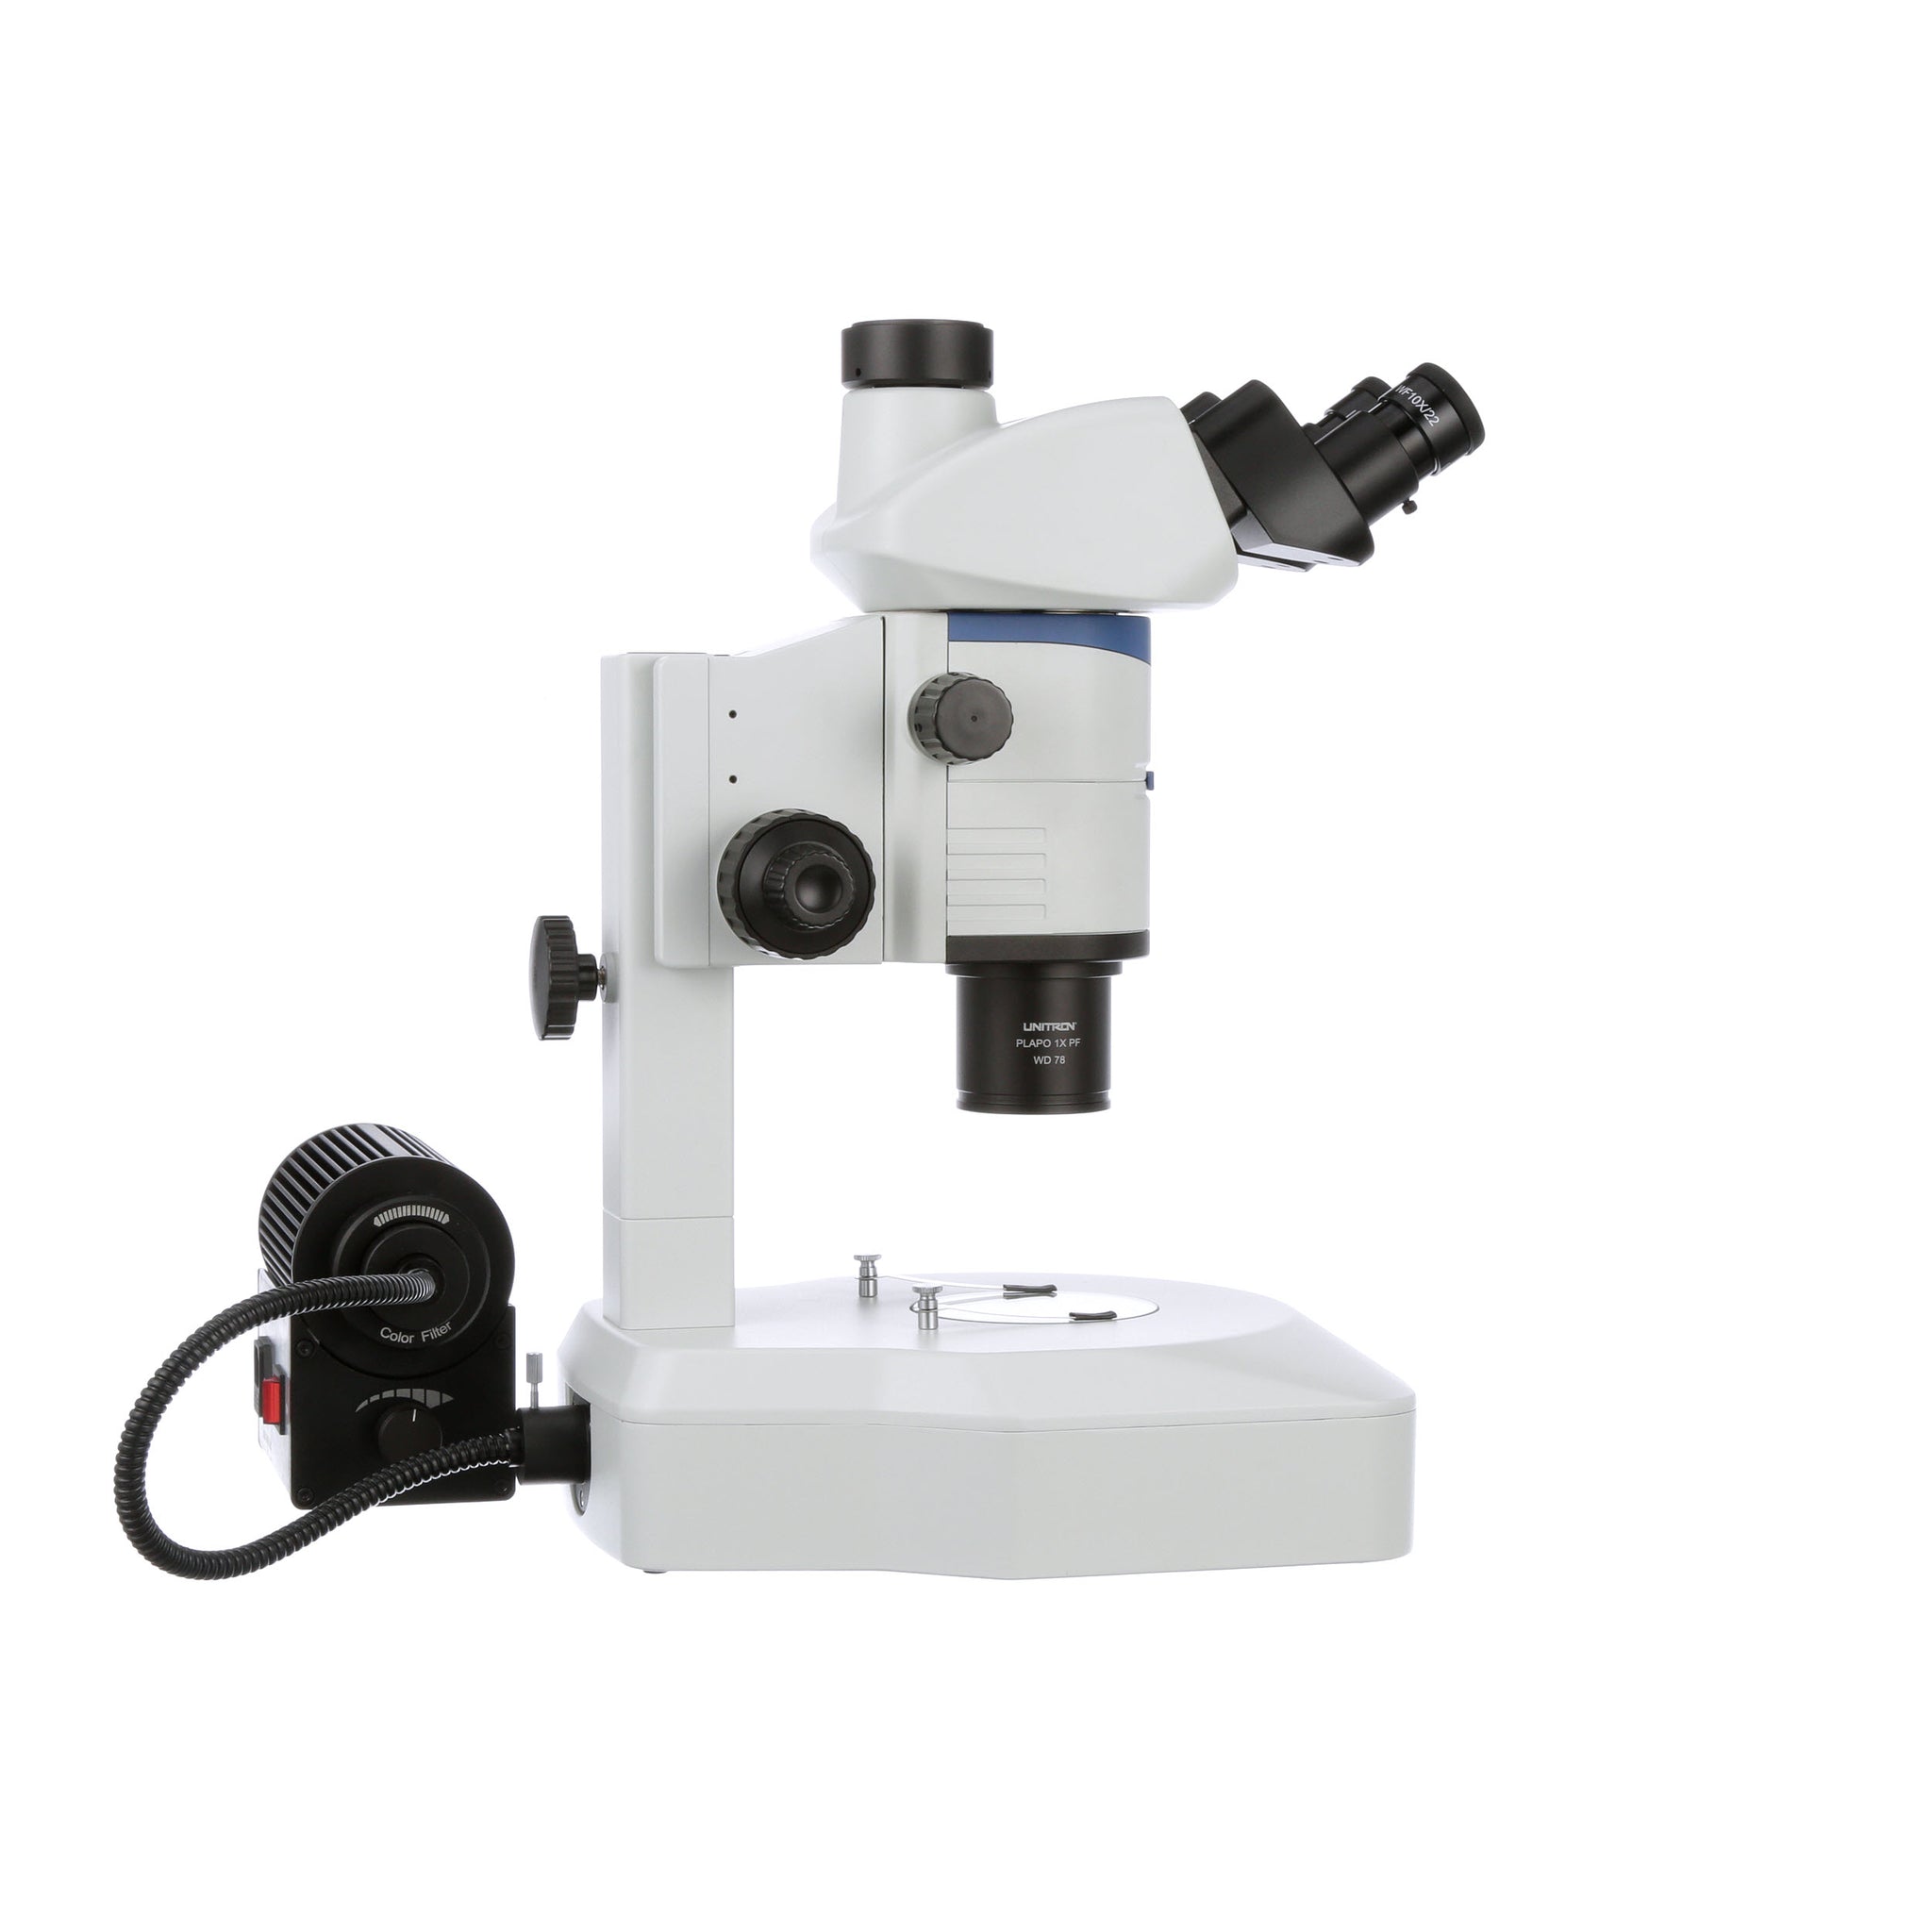 Unitron Z12 Stereo Zoom Microscope on Diascopic Stand 6.3x - 80x